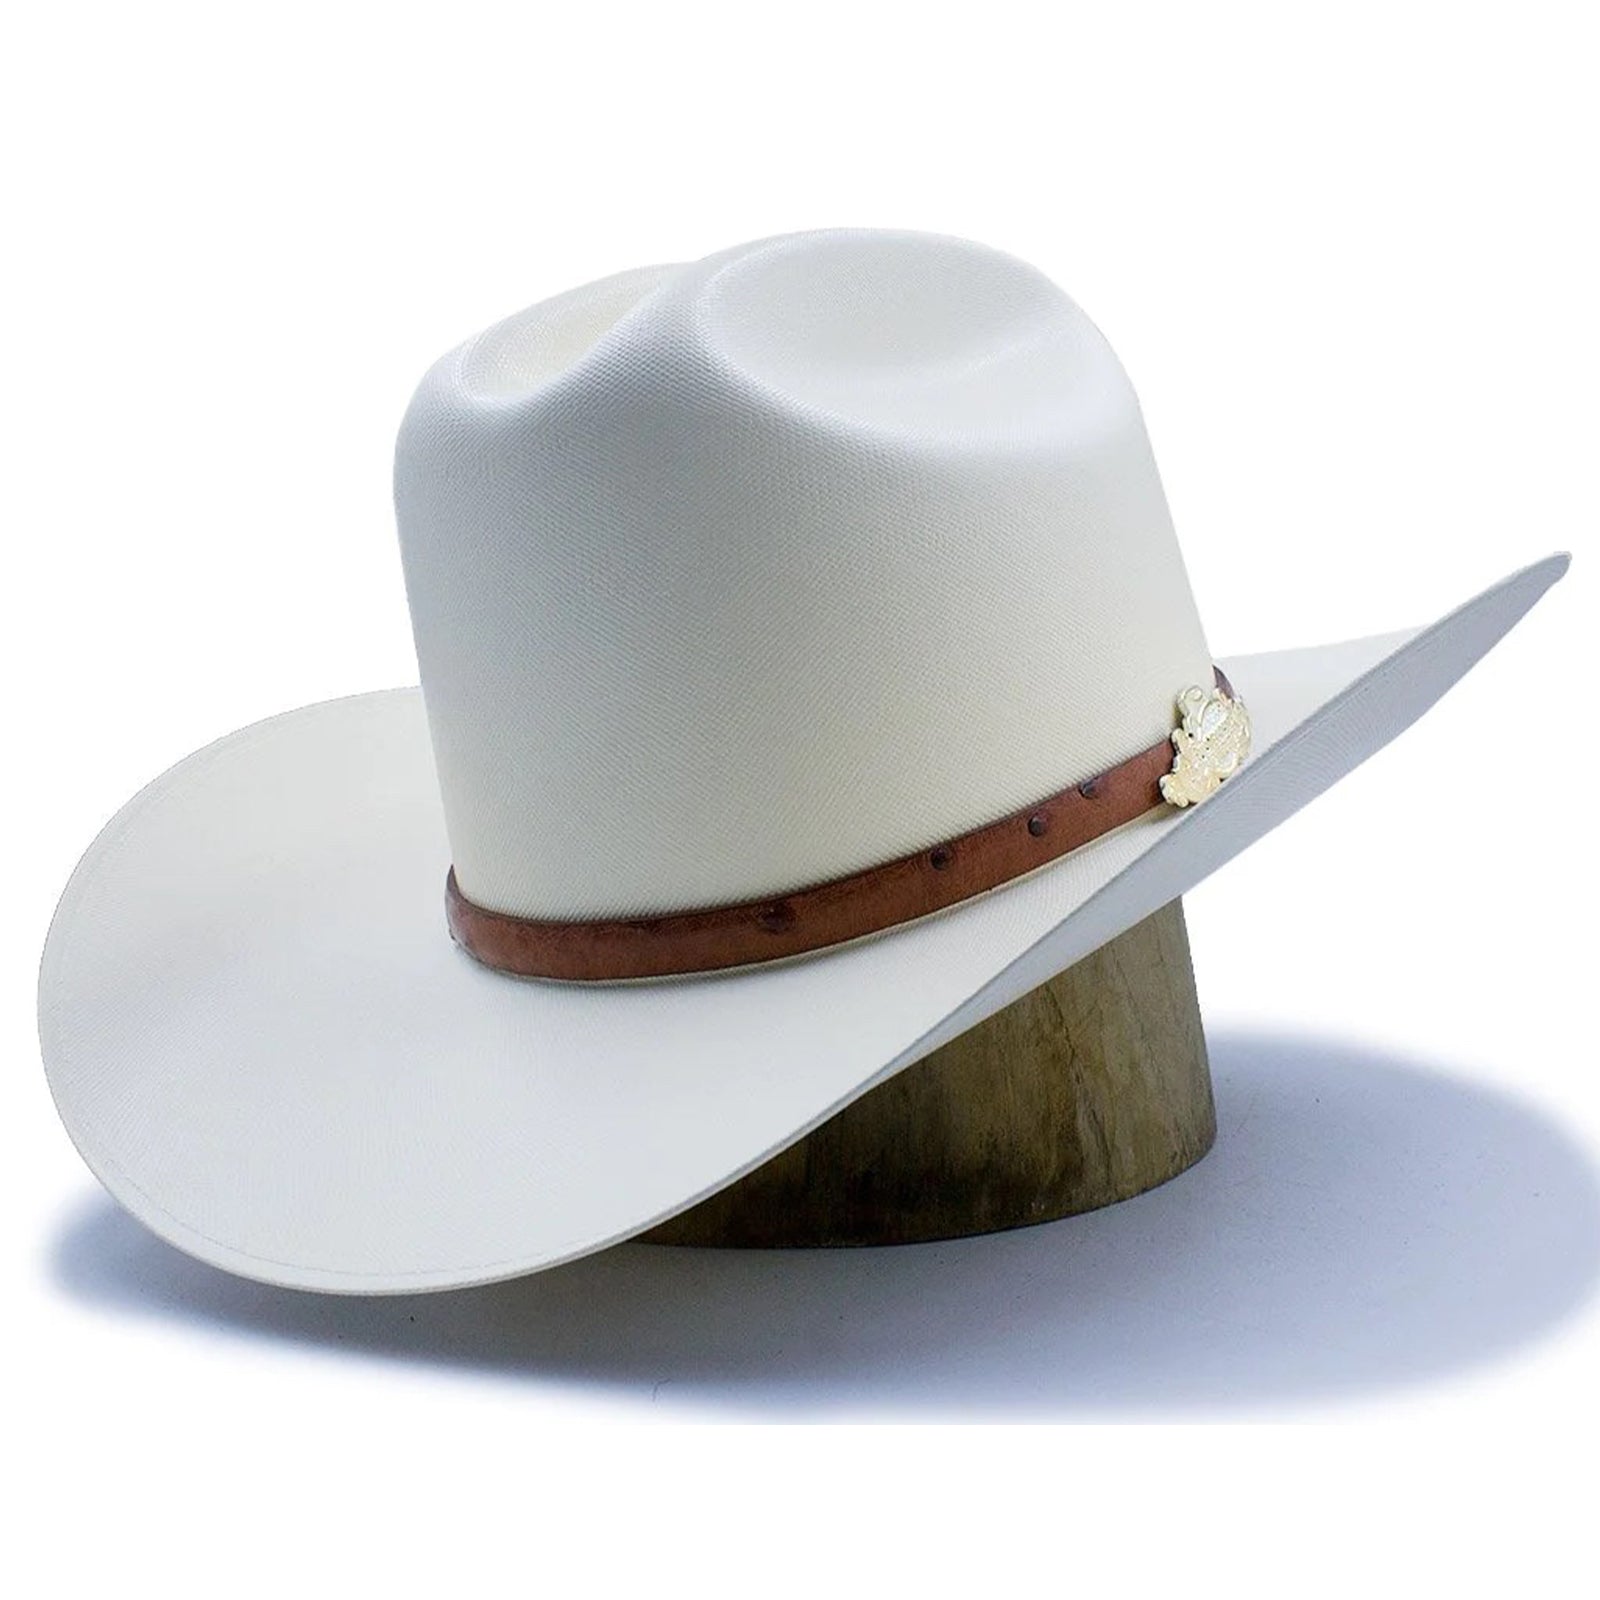 Cowboy and Cowgirl Hats for Every Occasion: Explore Today - sombreros-vaqueros  - sombreros-vaqueros